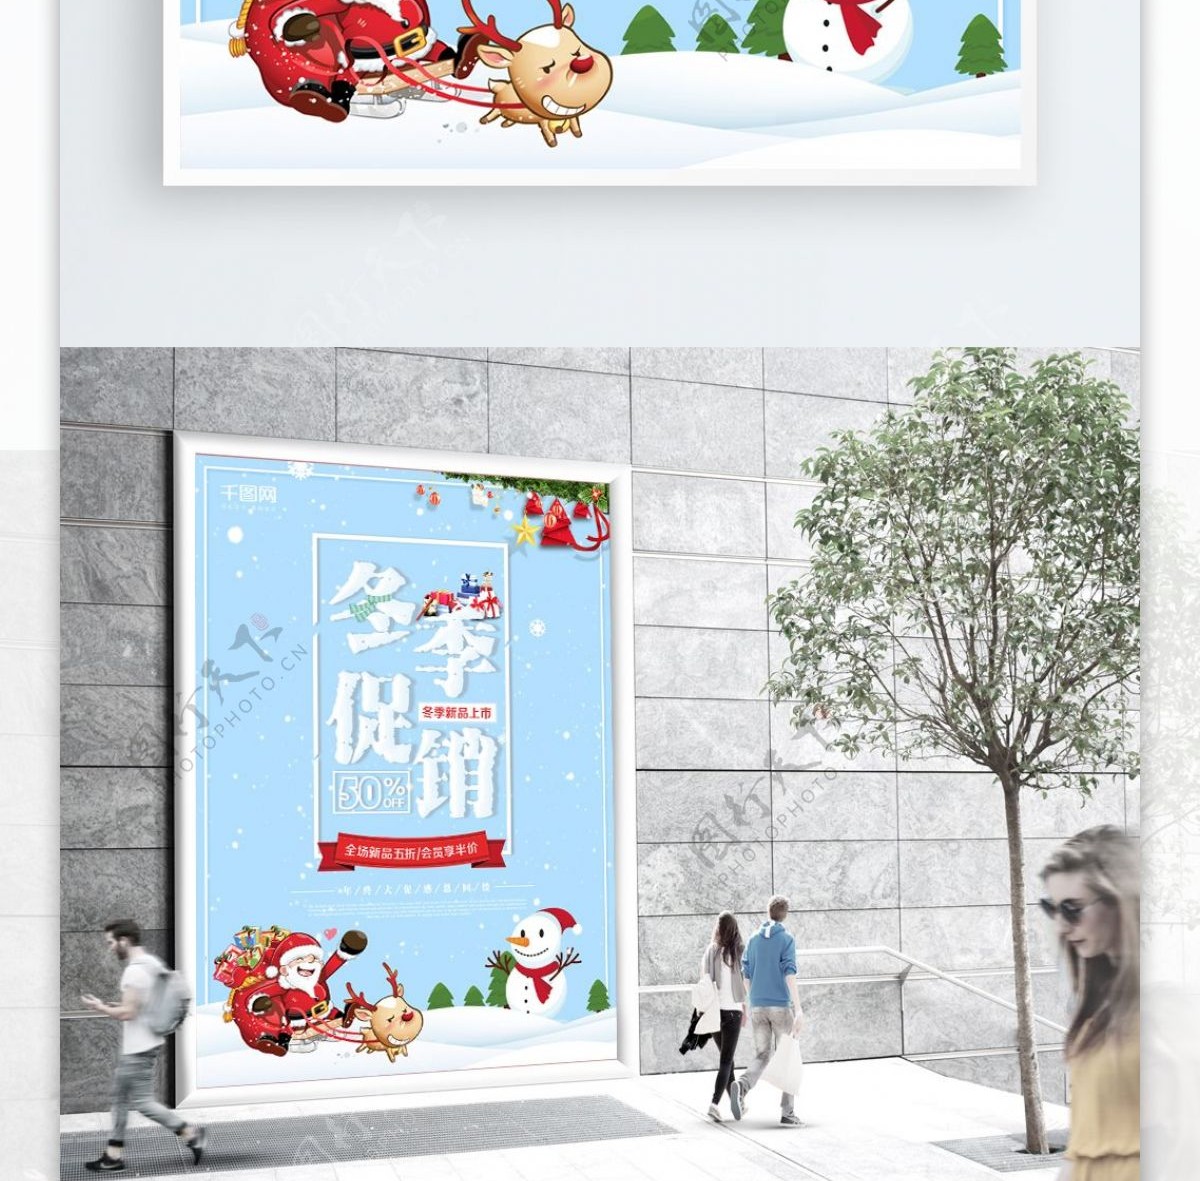 简约小清新冬季促销海报设计模板